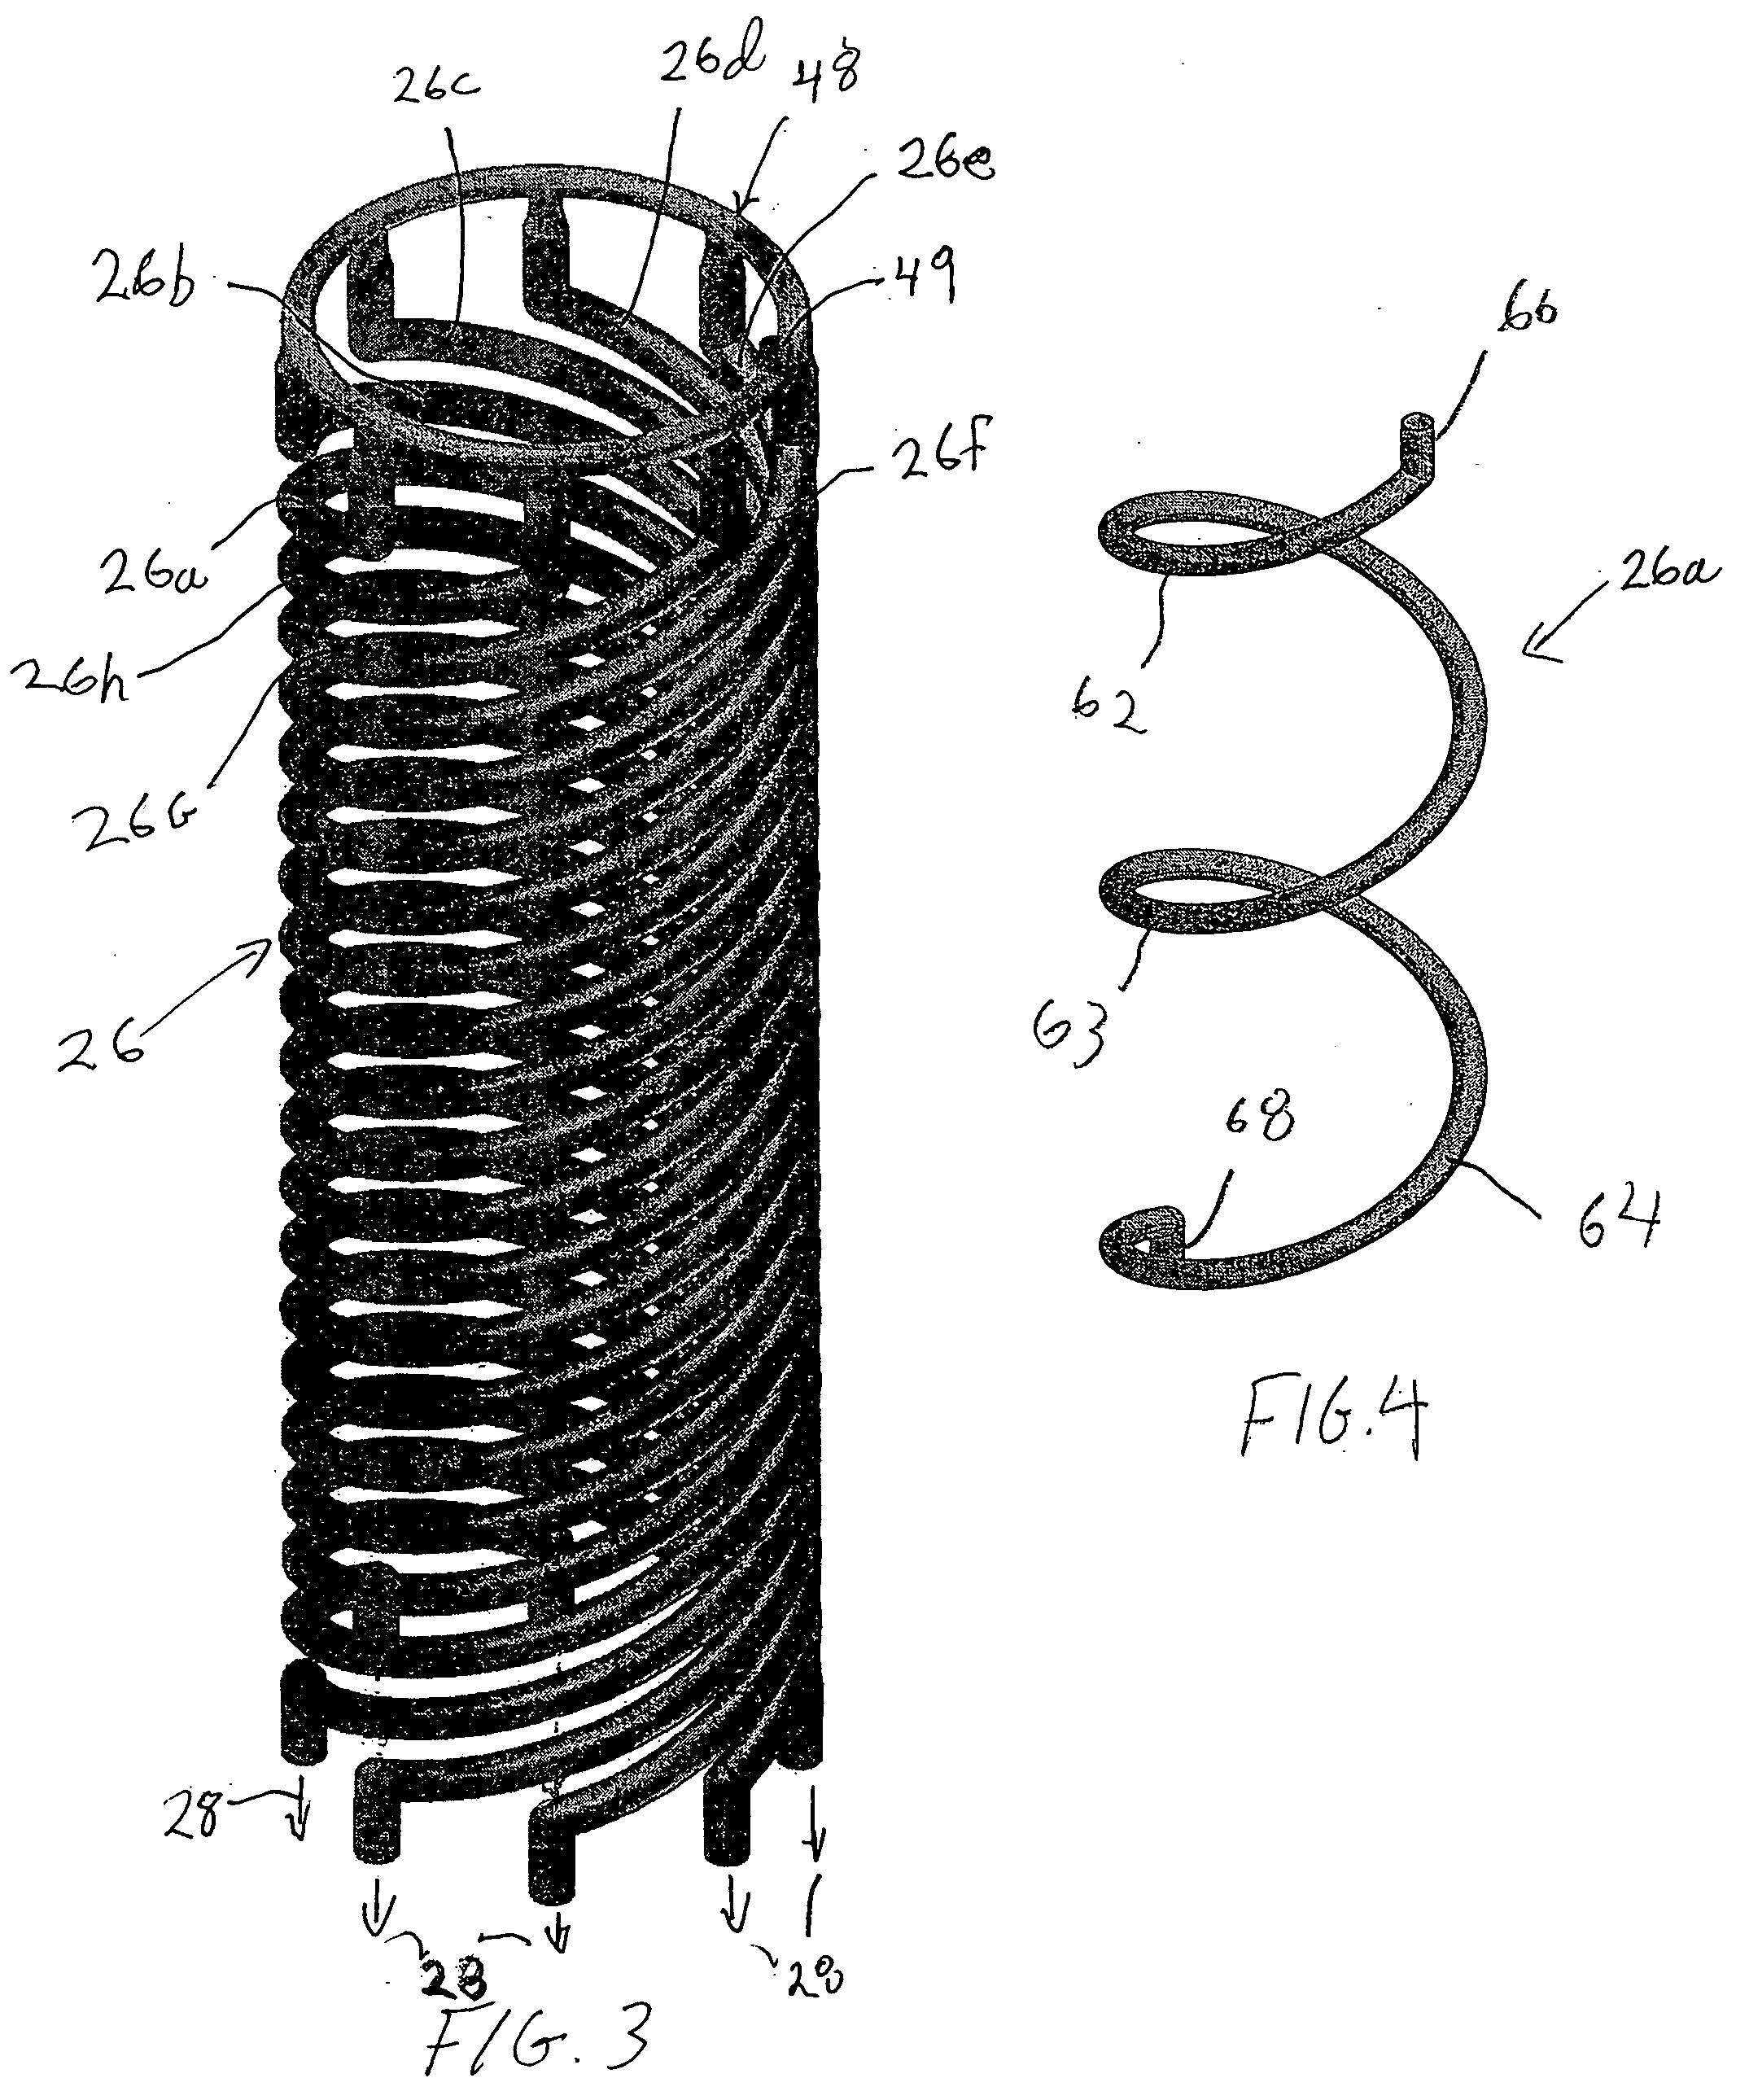 Catalytic reactor